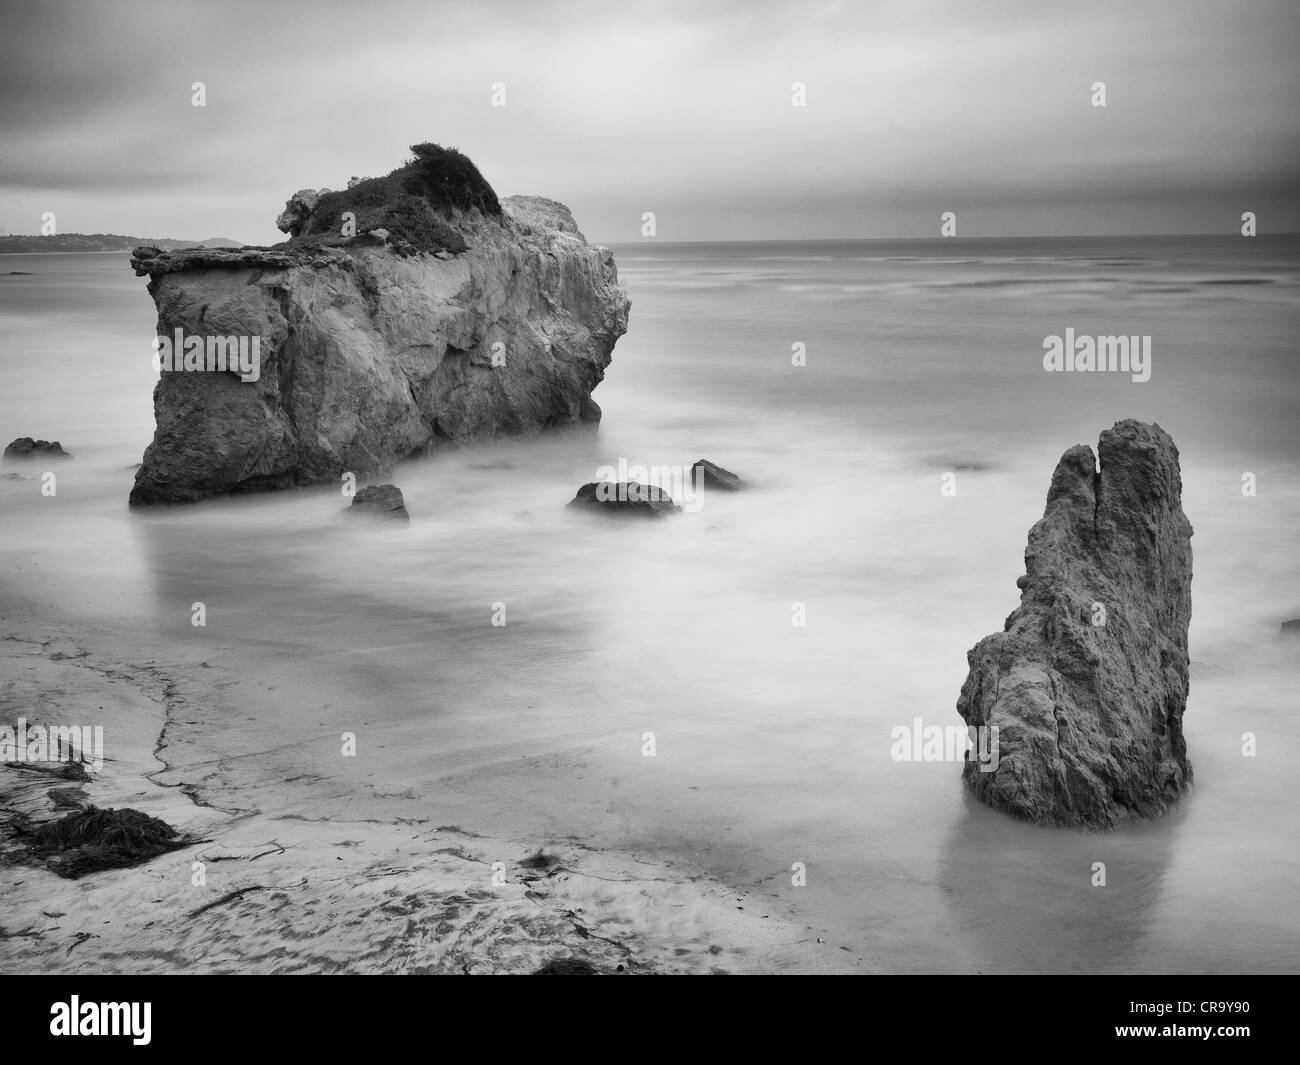 El Matador Beach, Malibu, Californie, États-Unis d'une longue exposition de la photographie créative artistique Banque D'Images